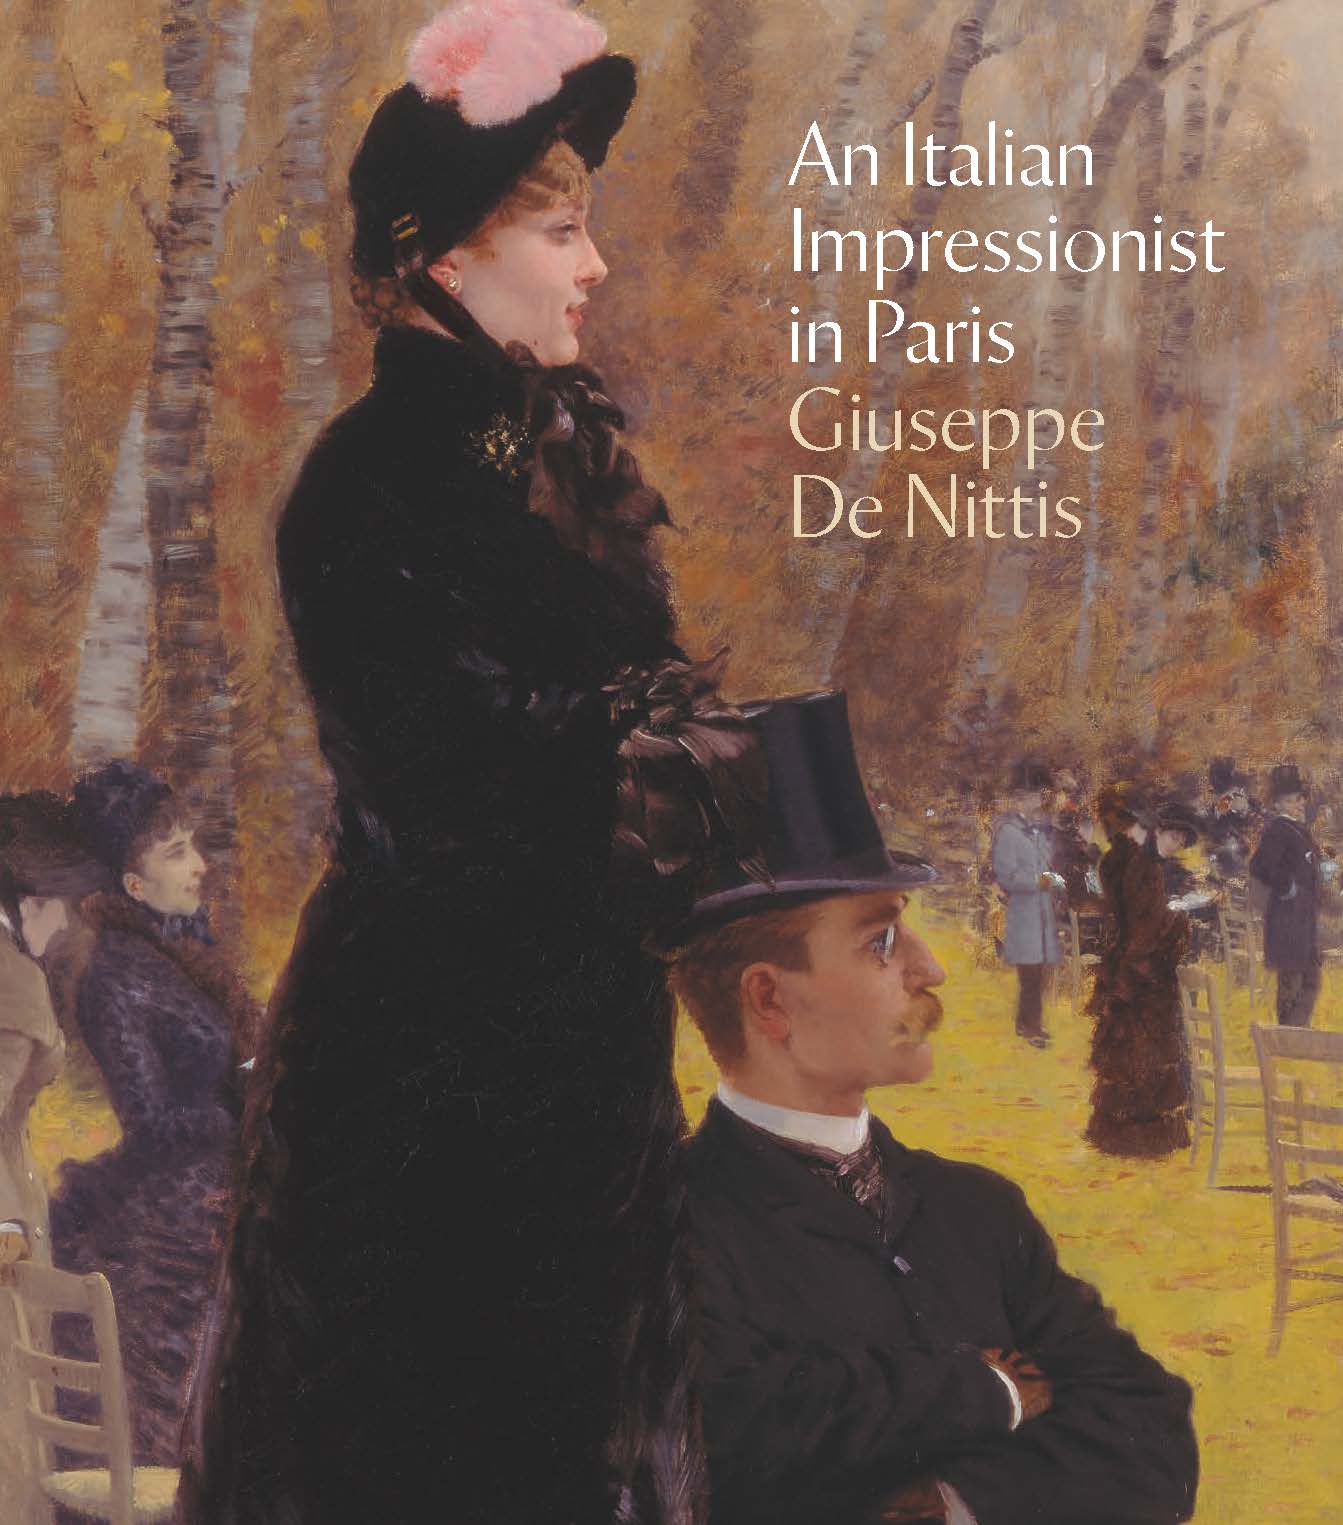 De Nittis exhibition catalogue cover